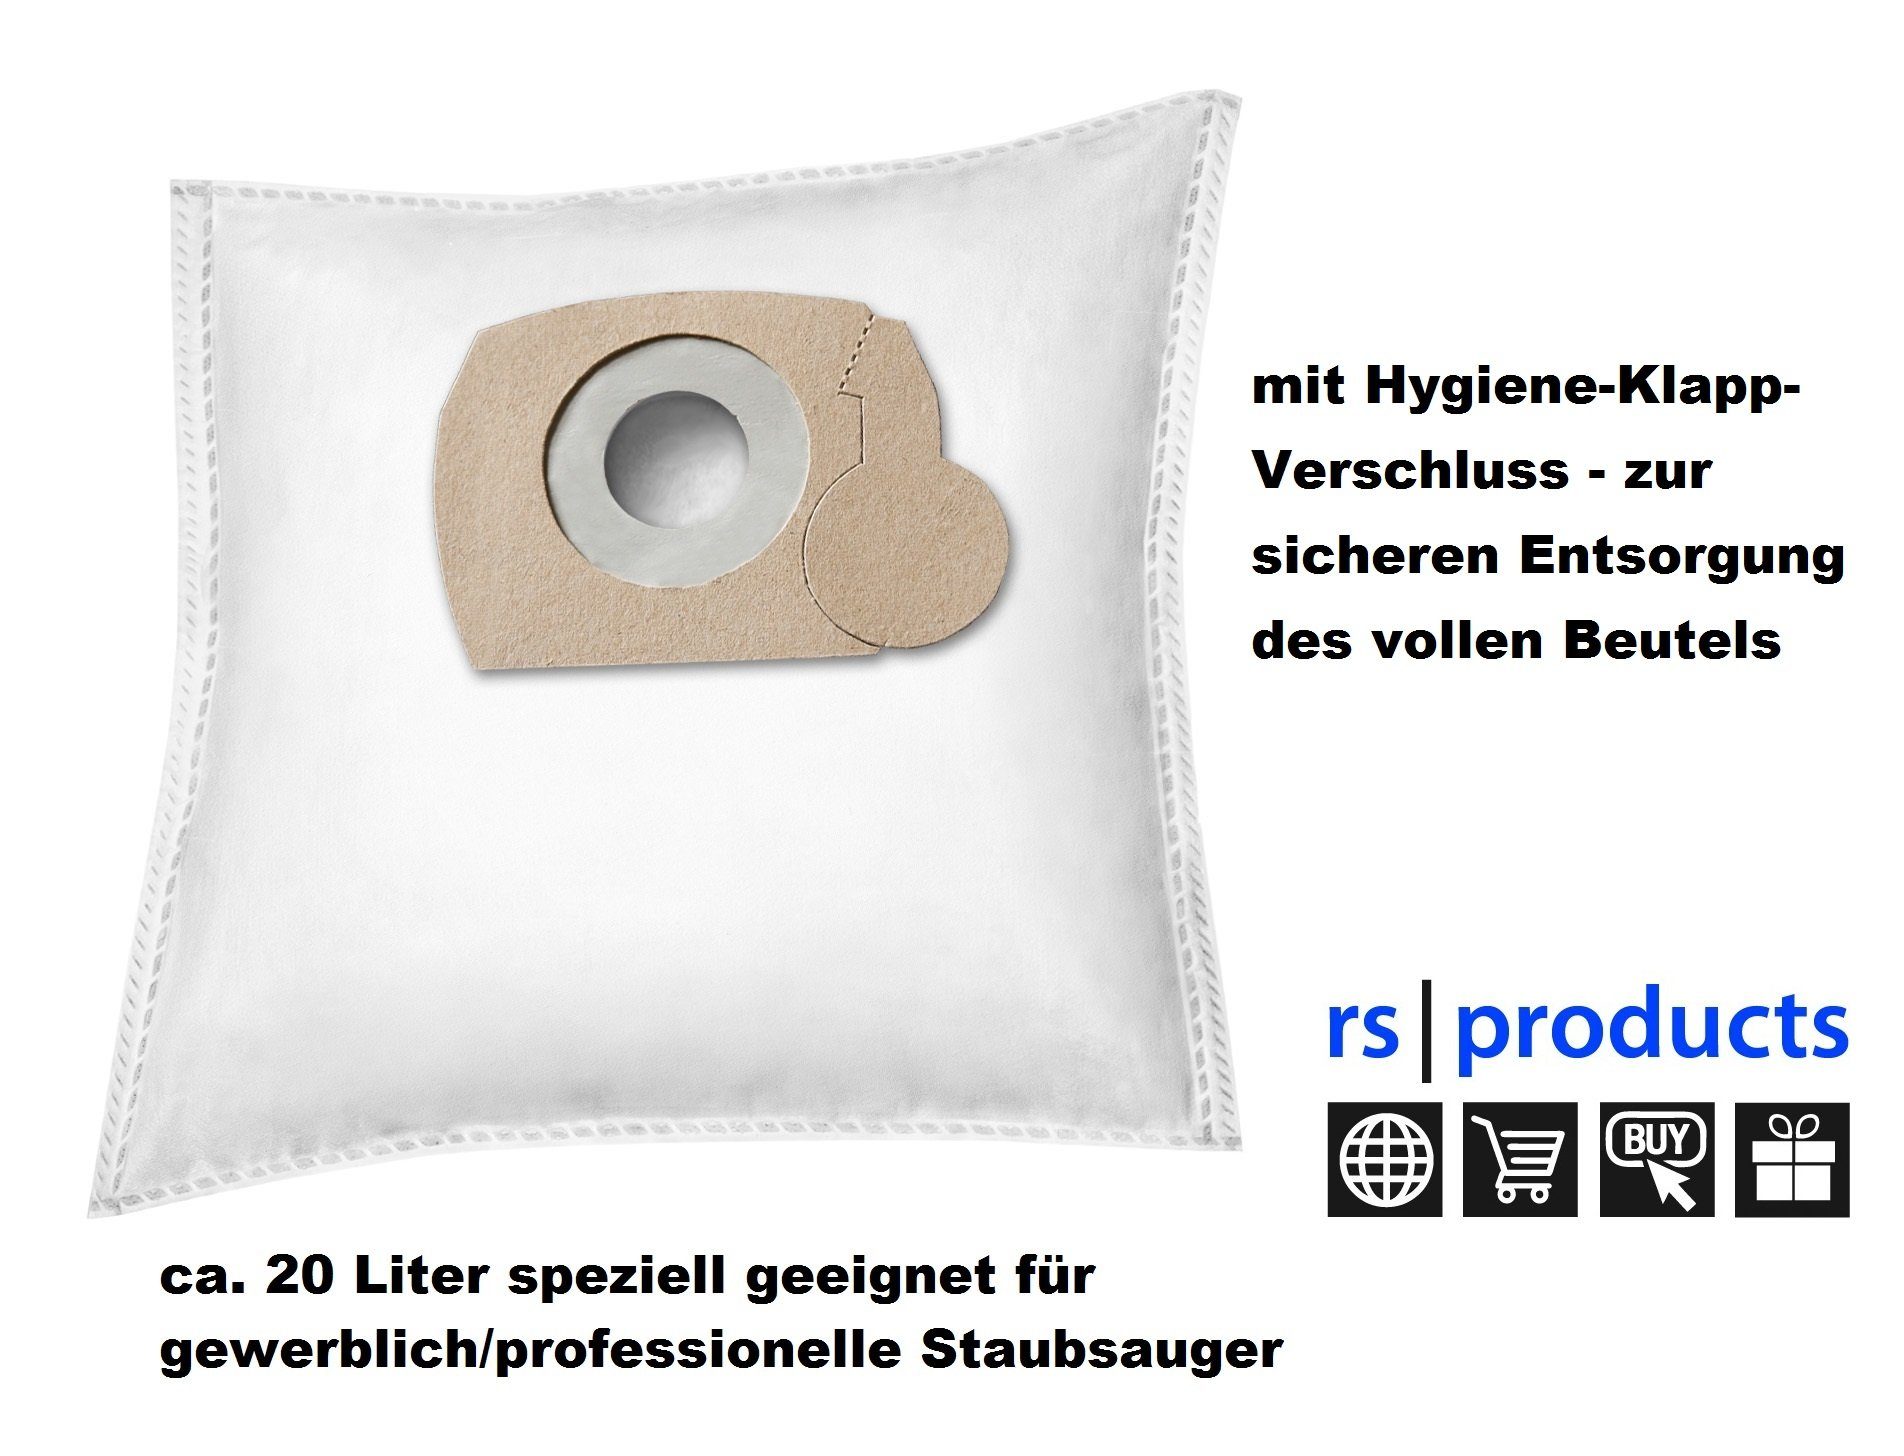 rs-products Staubsaugerbeutel, passend für Einhell Versand! 30 Duo Stk., 100 1250 5 Stk., ab Sie - Stk., - Stk. 12,90 Stk., 10 - Einhell kostenloser 20, / Stk. zwischen wählen 5 und St., 20 50 Duo €